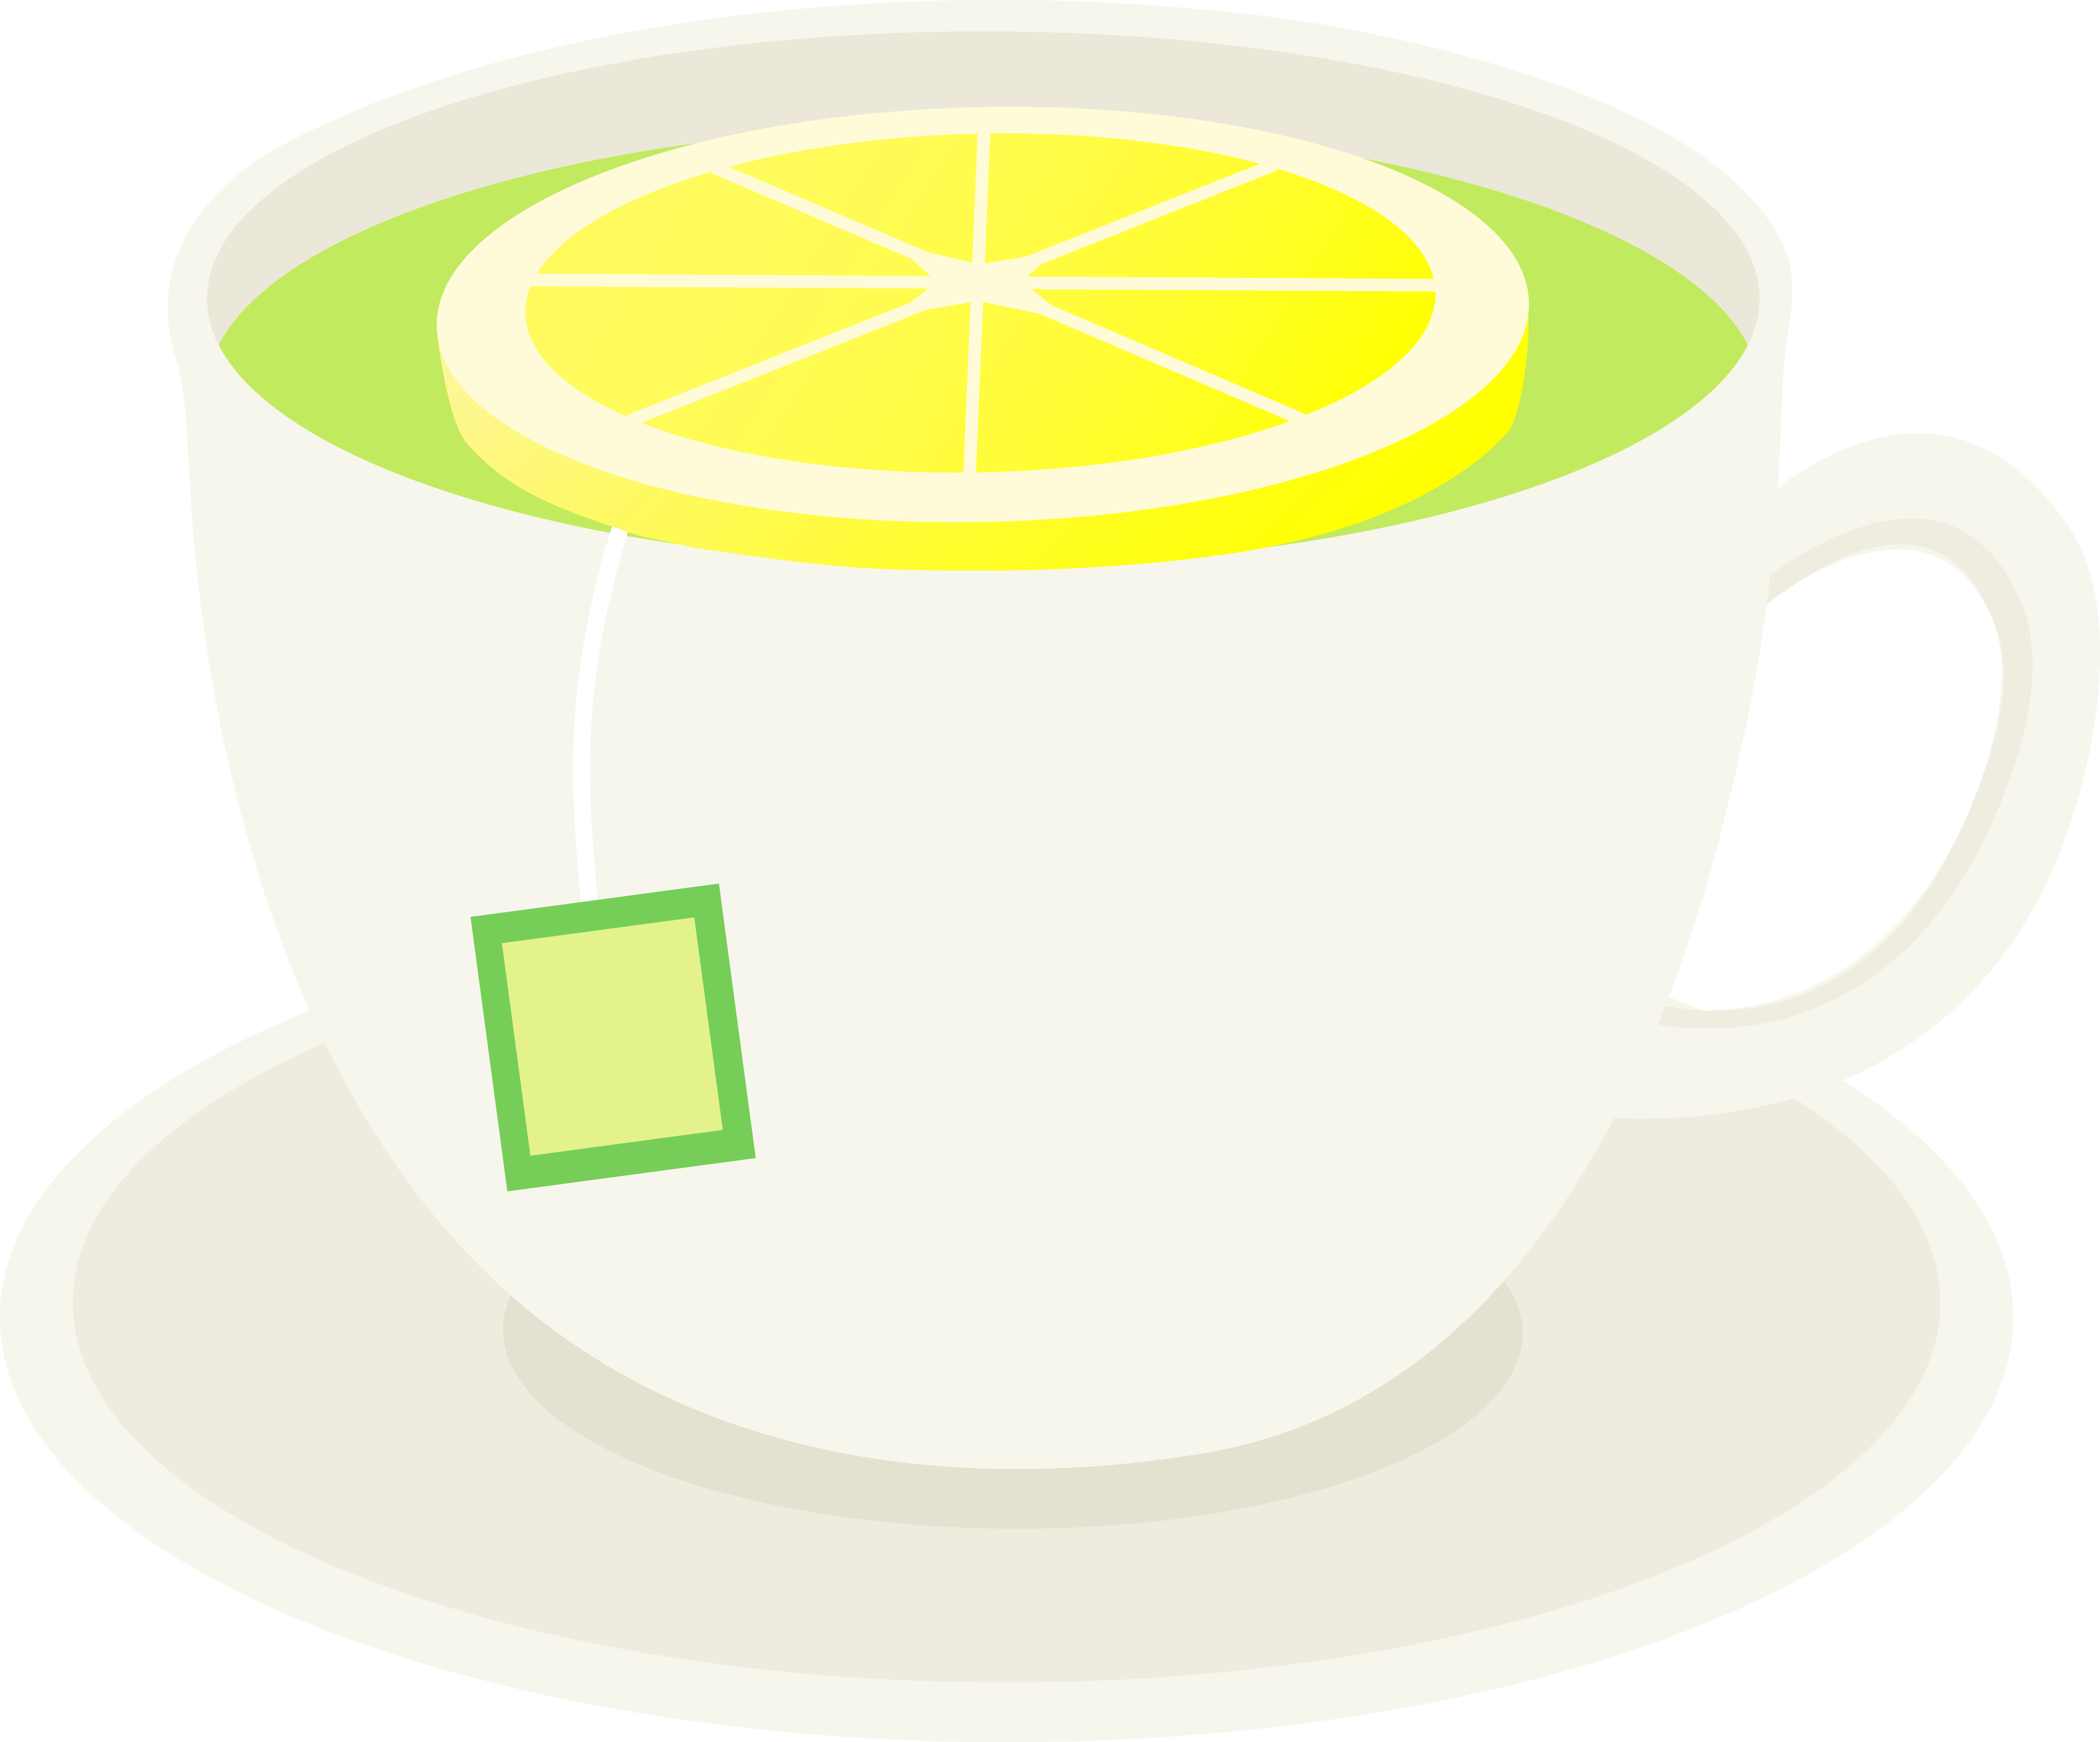 Green with lemon slice. Tea clipart ginger tea